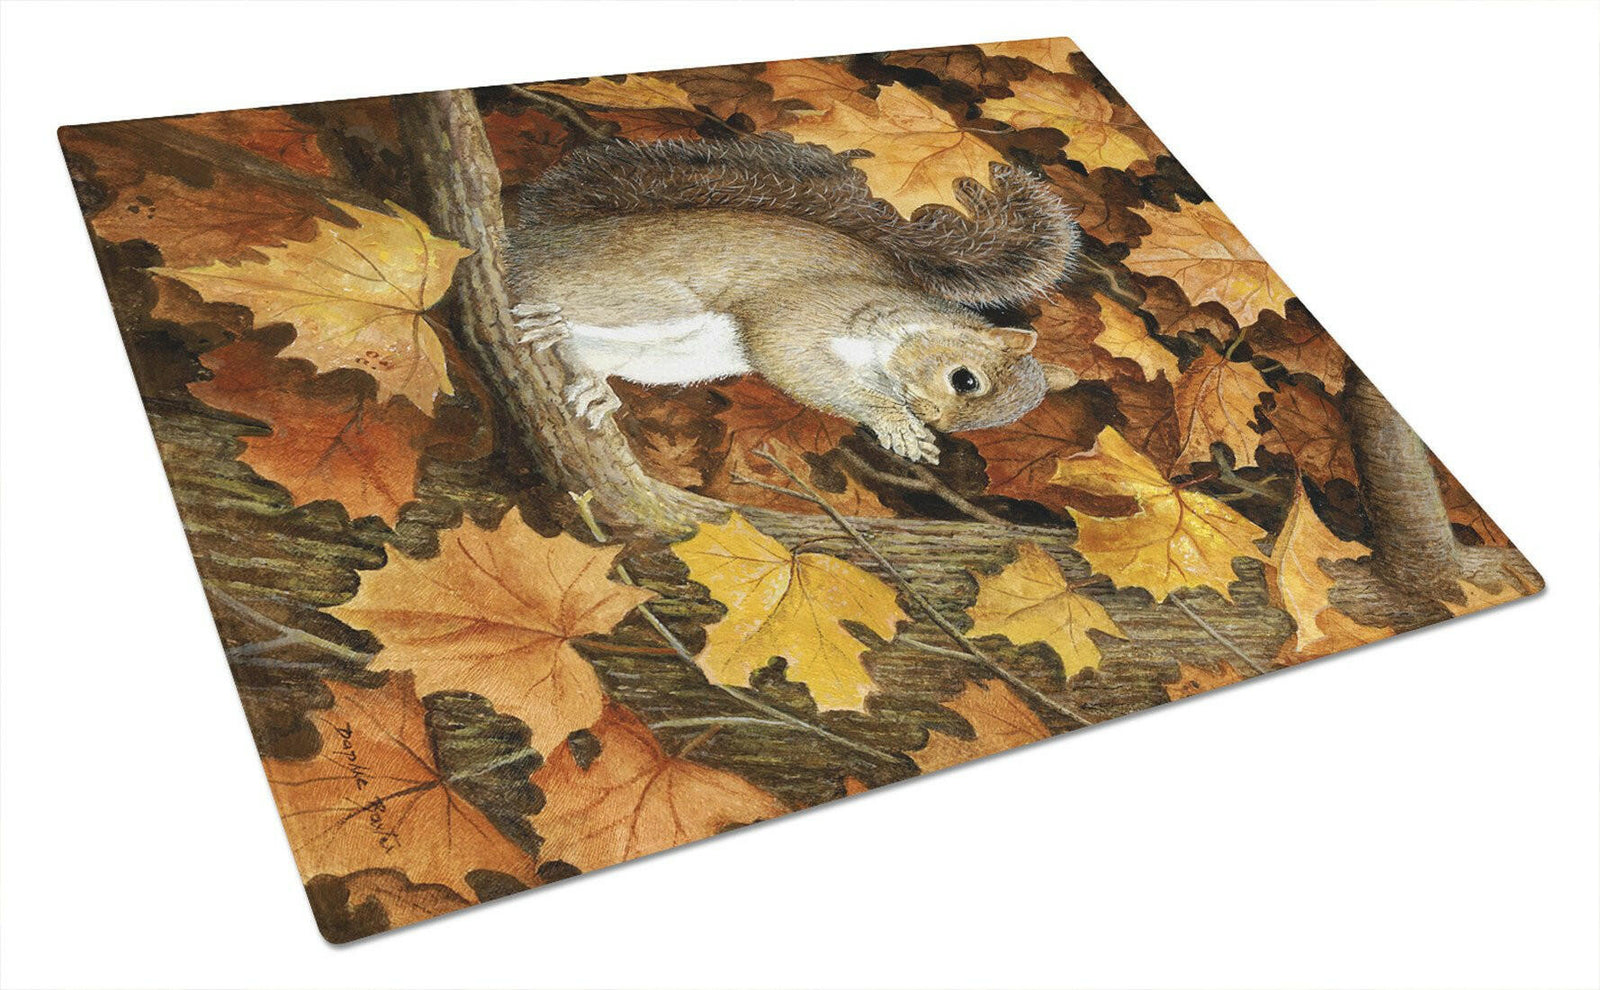 Autumn Grey Squirrel by Daphne Baxter Glass Cutting Board Large BDBA0388LCB by Caroline's Treasures